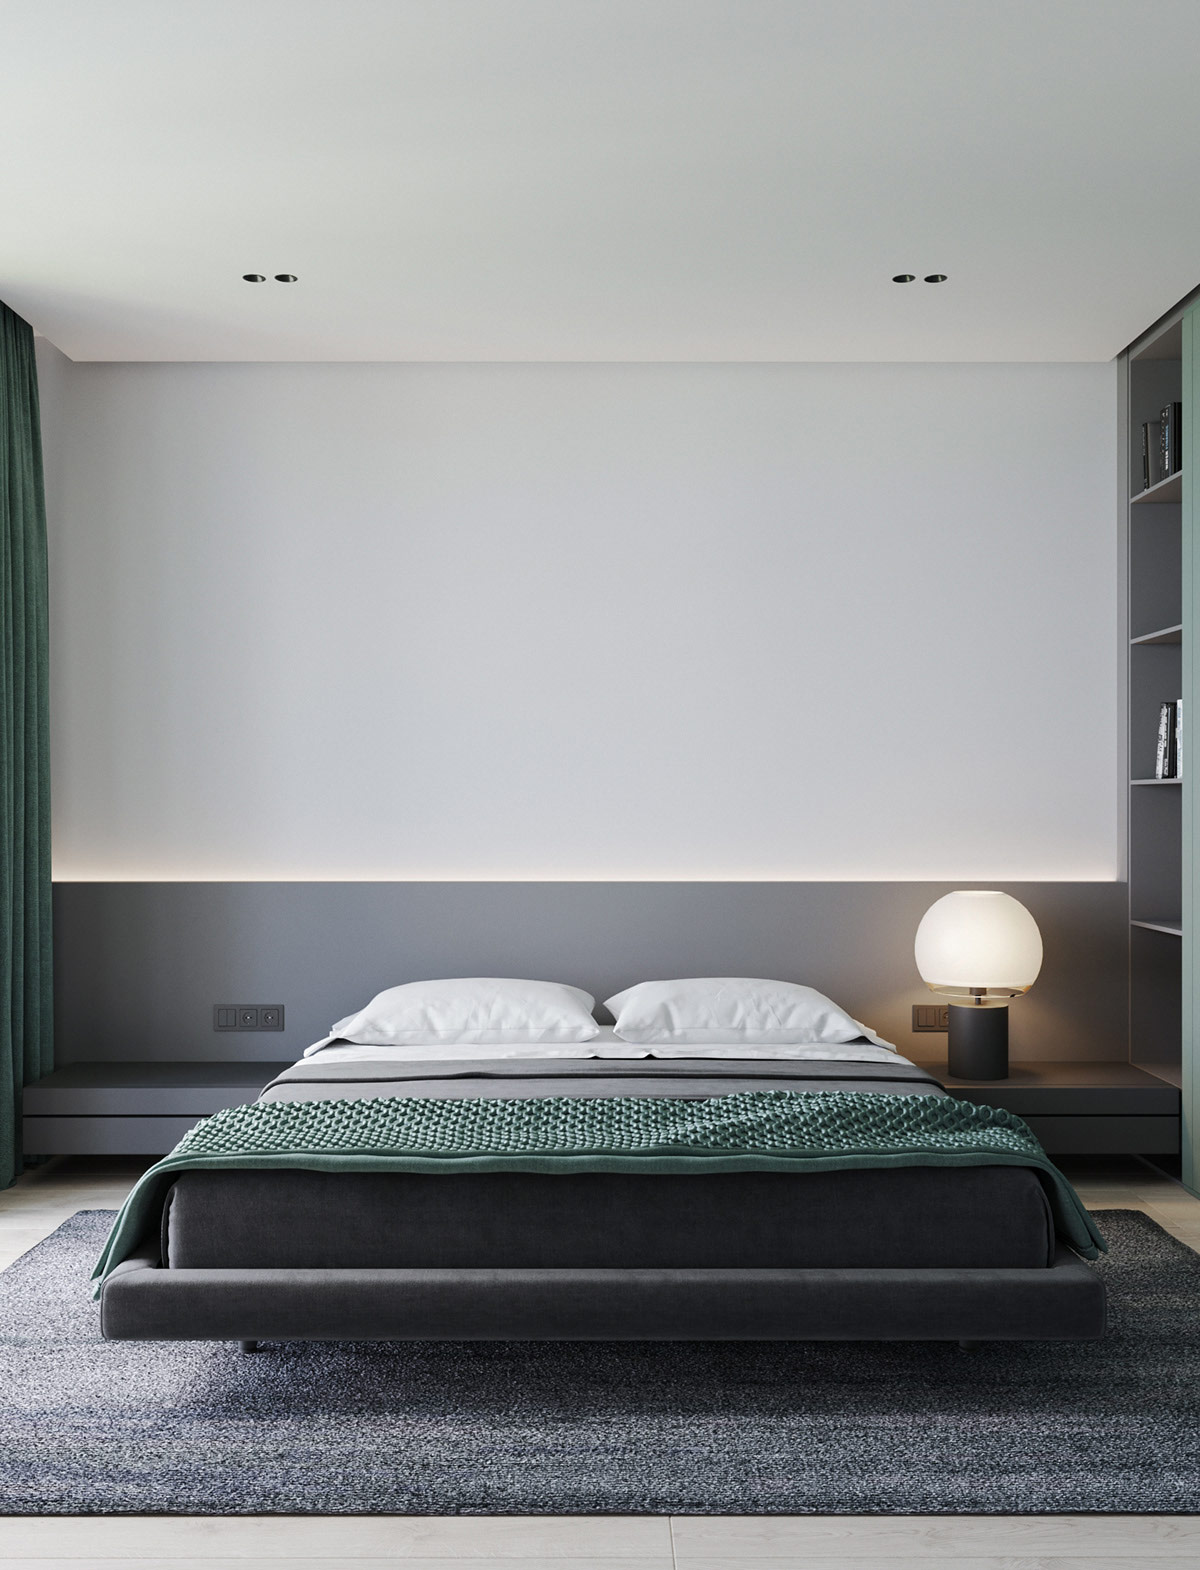 green-bedroom-decor.jpg